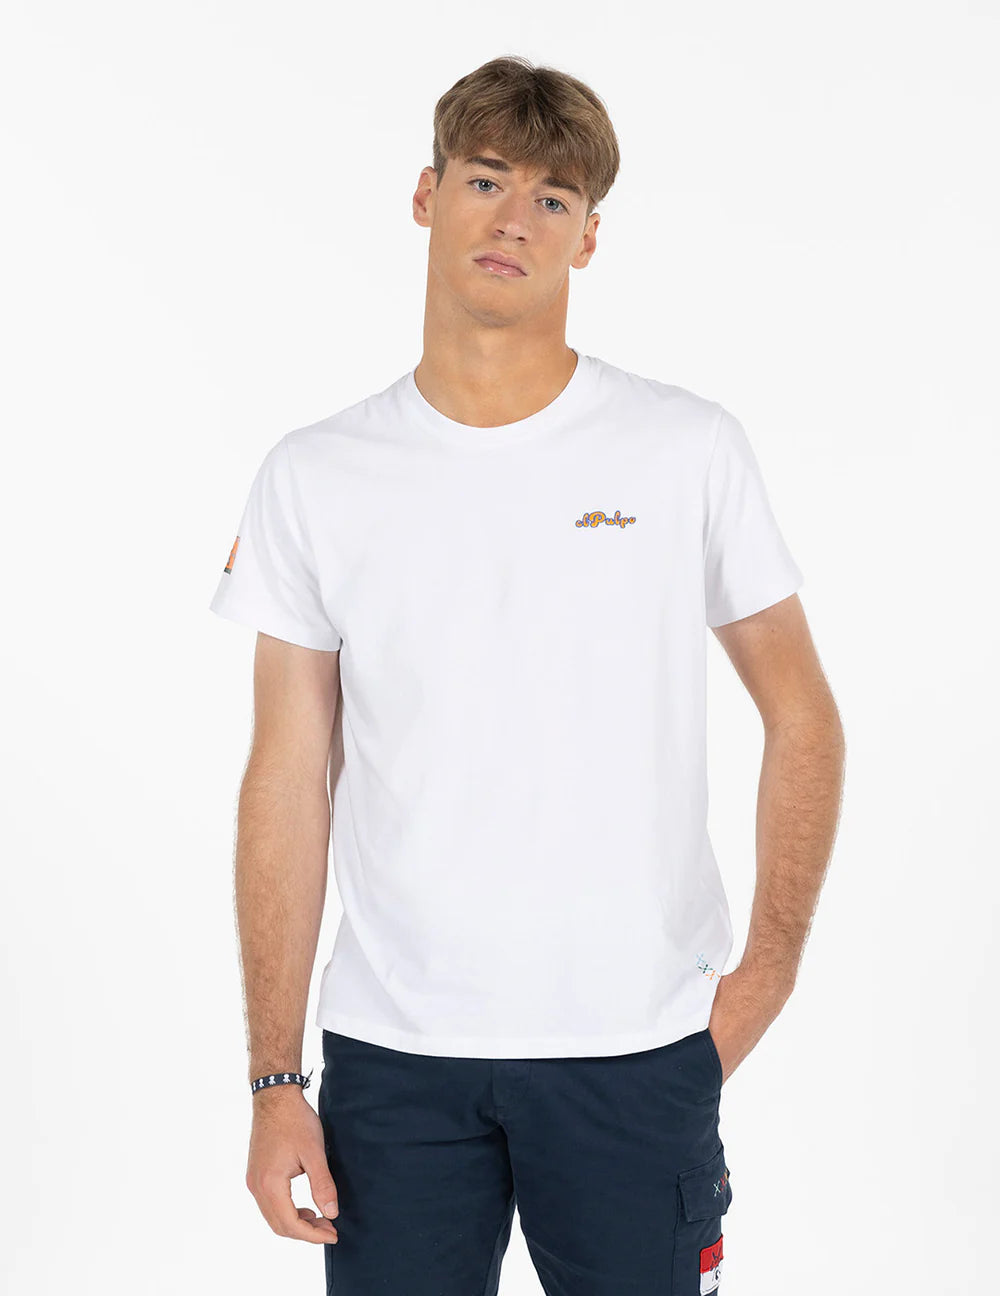 El Octopus T-Shirt mit Shapes-Print in reinem Weiß